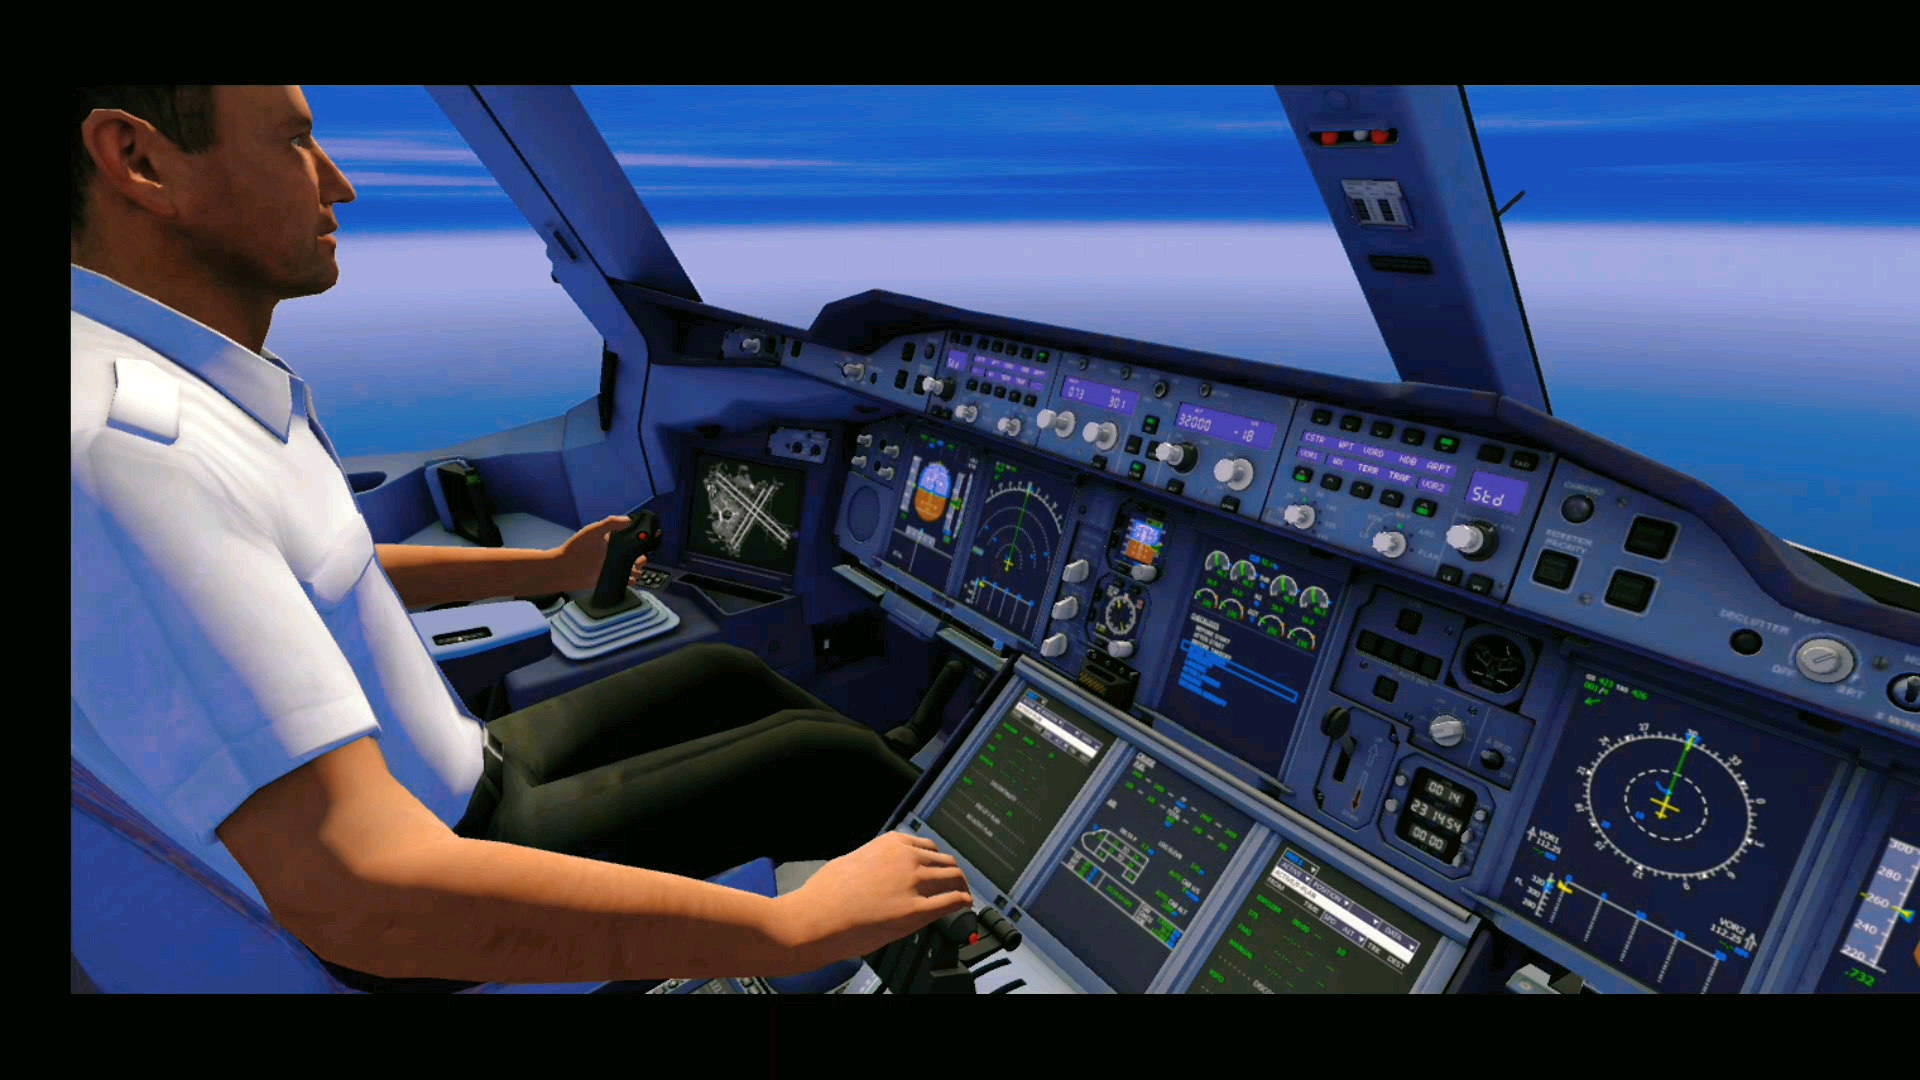 中国南方航空a380虚拟飞行表演,以后恐怕只能在游戏里看到他了